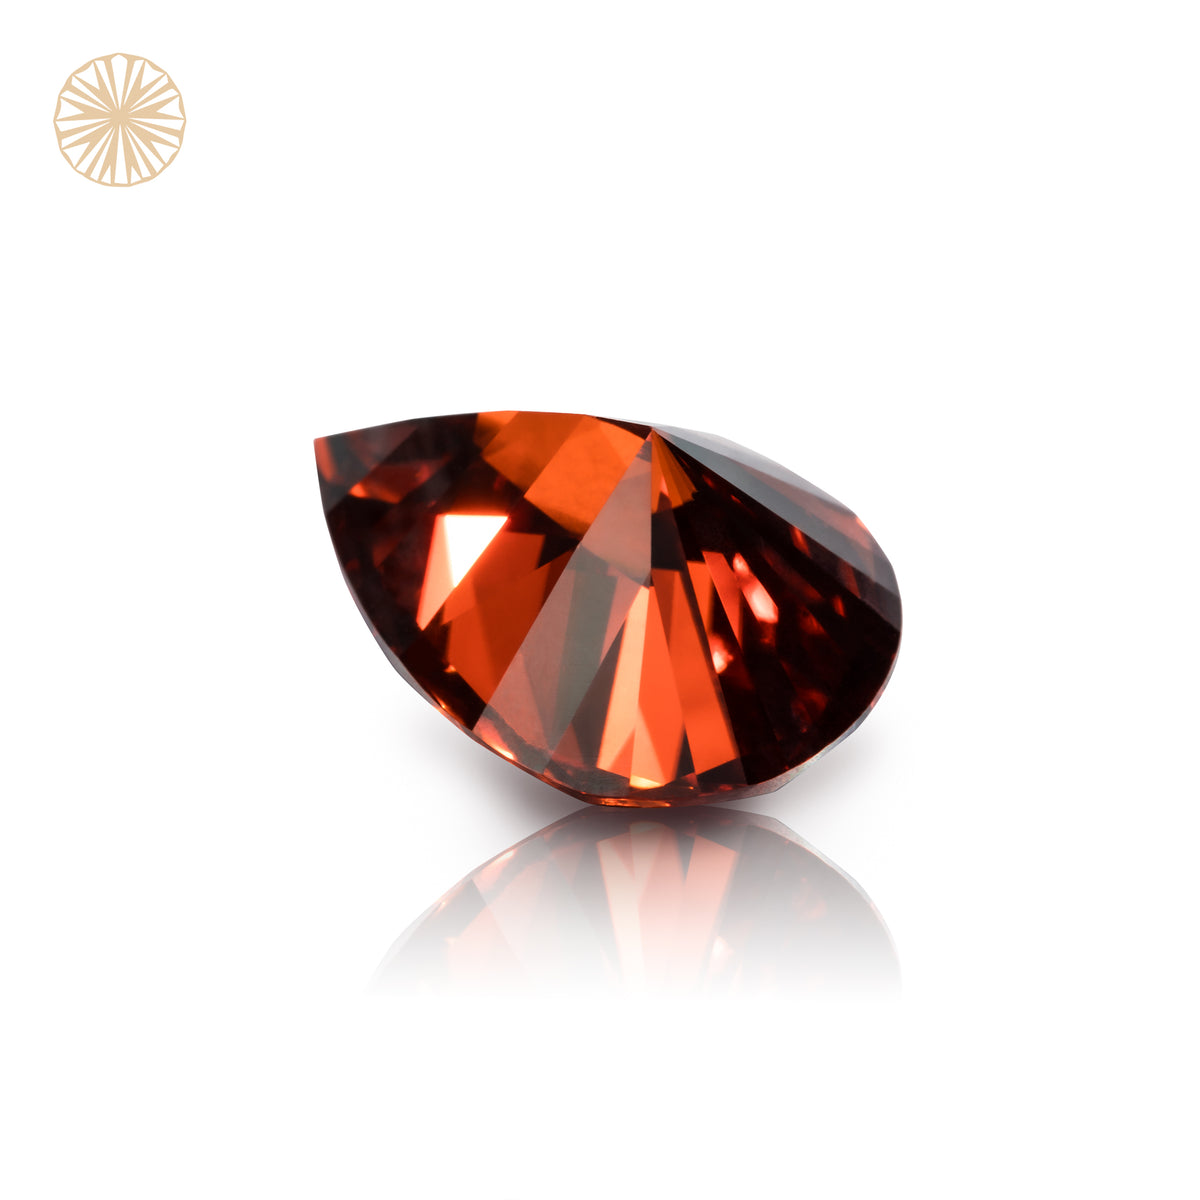 Luxury Red Pear Cut Teardrop Shape Moissanite Diamond Loose Gemstones GRA Certified Vivid Red VVS1 Moissanite Fancy Cut for Jewelry Making